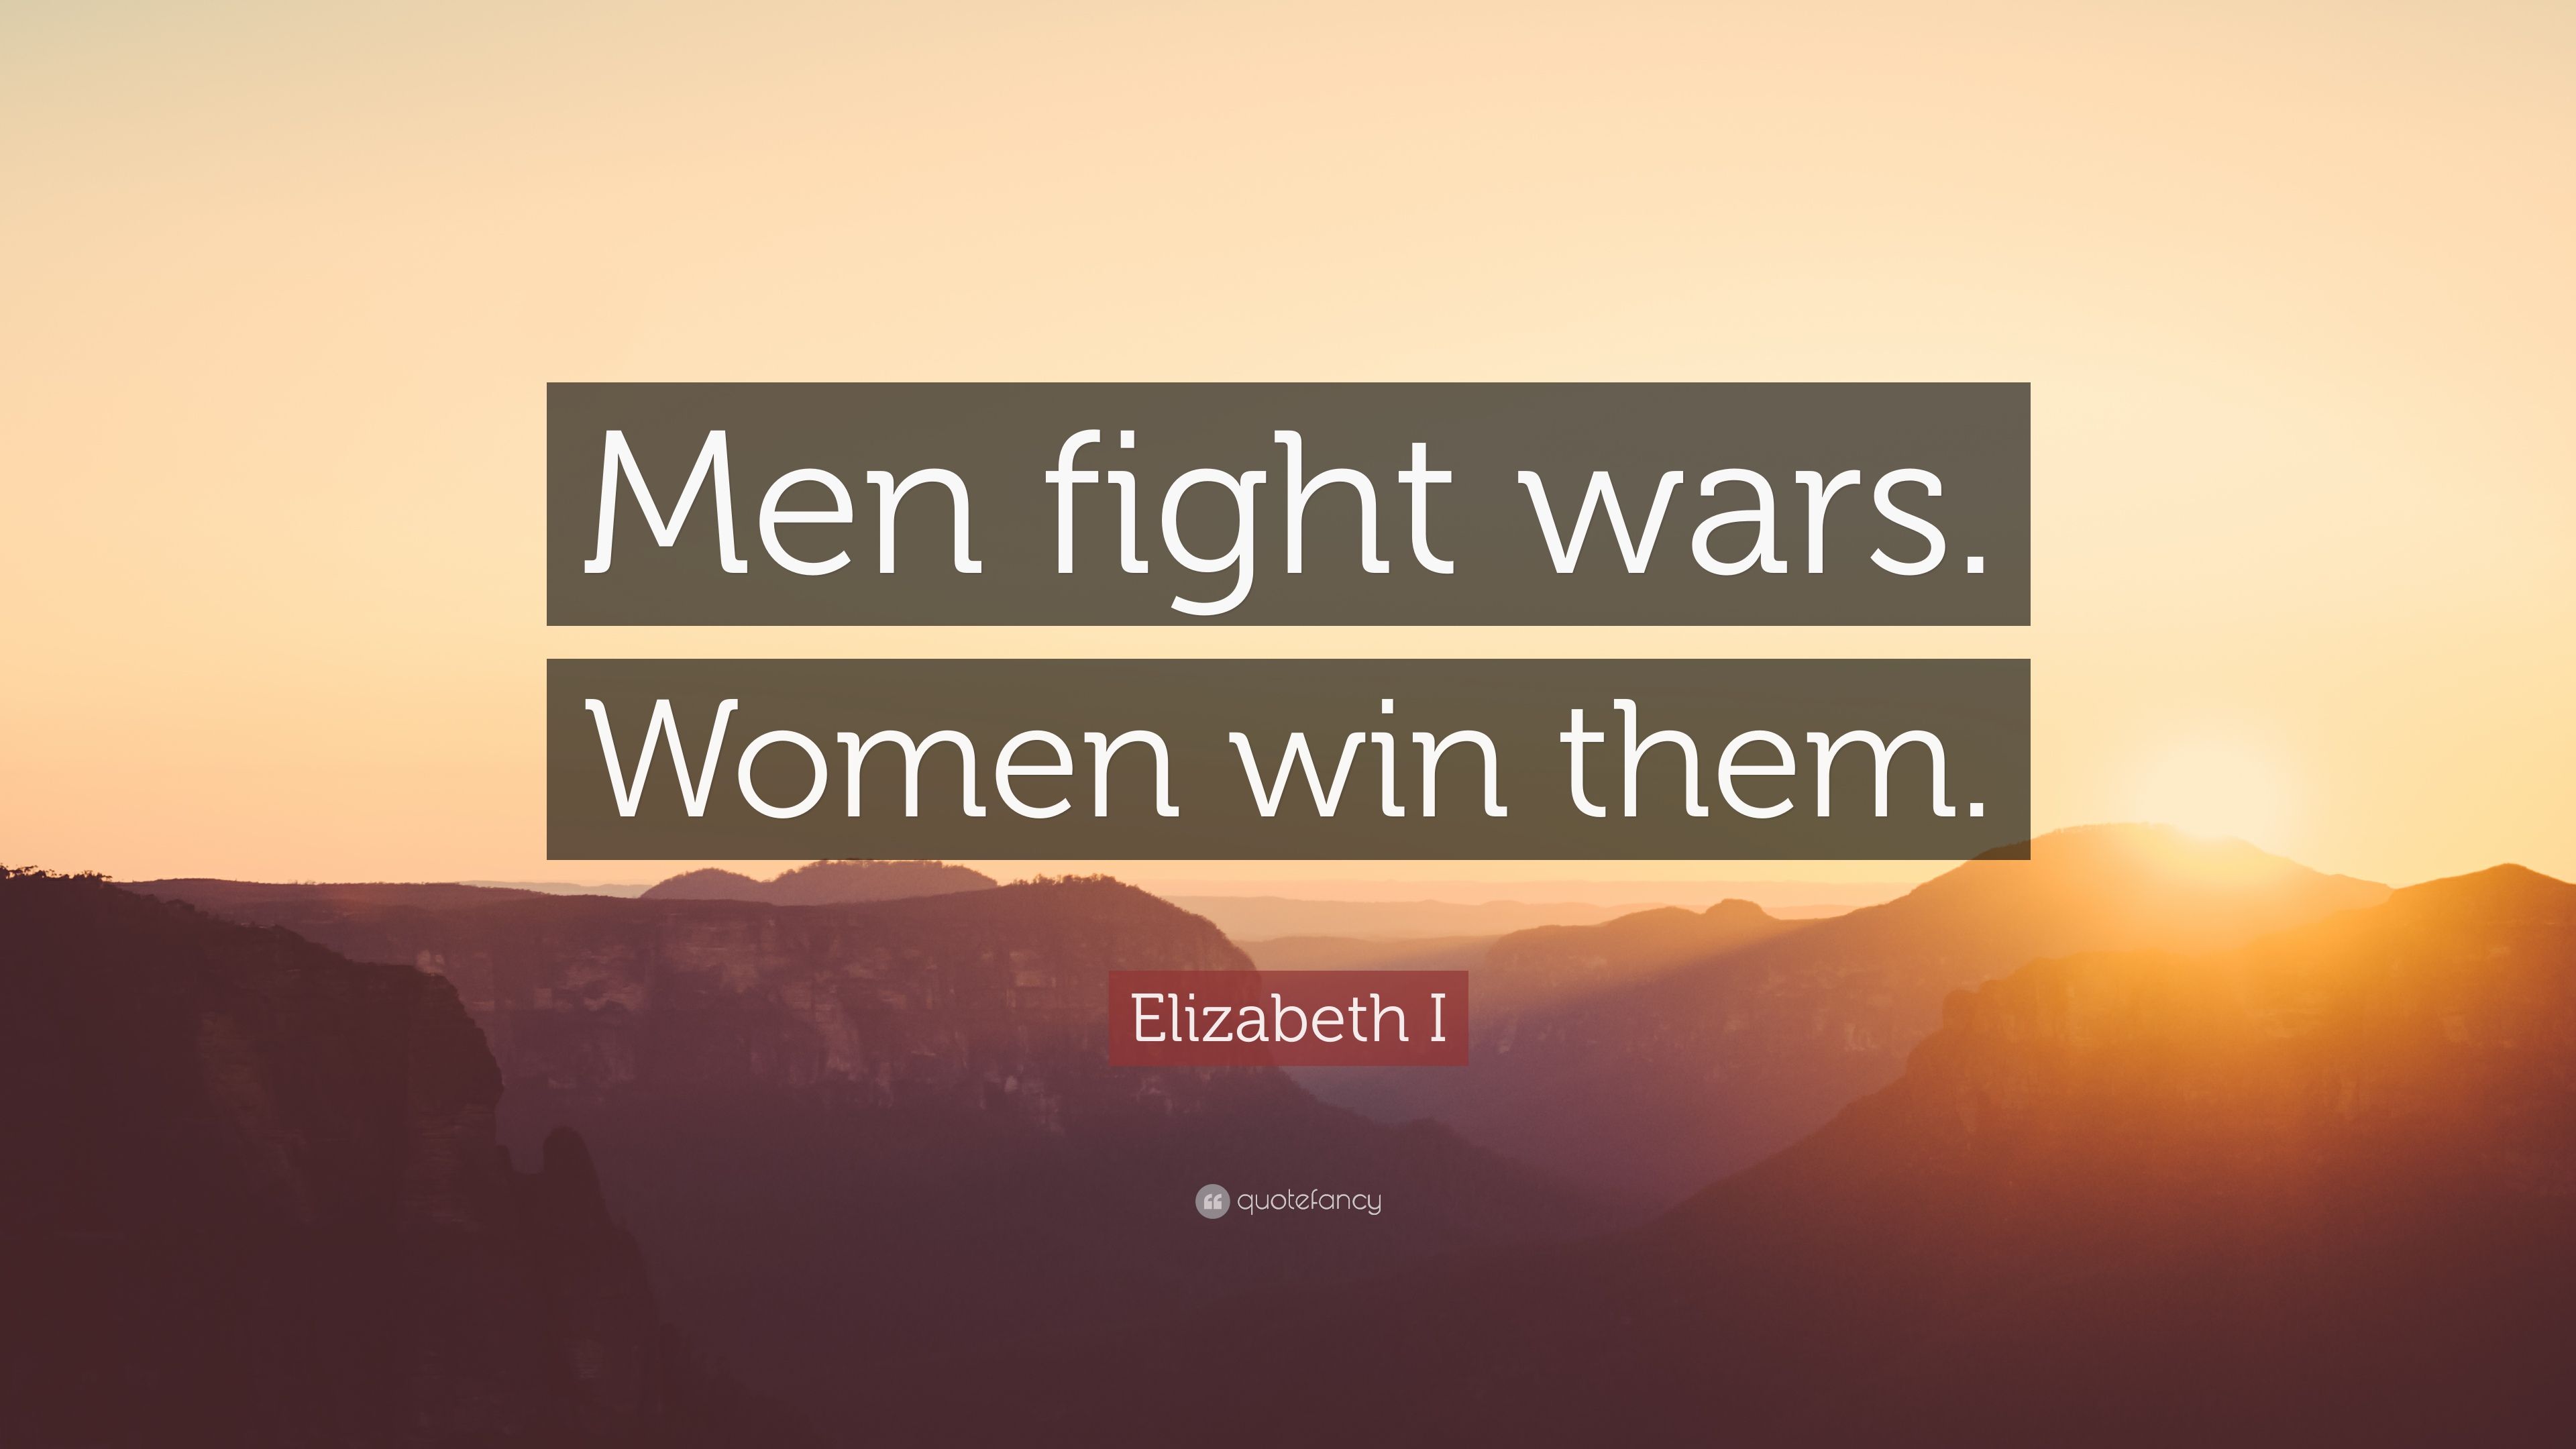 Elizabeth I Quote: “Men fight wars. Women win them.” (9 wallpaper)